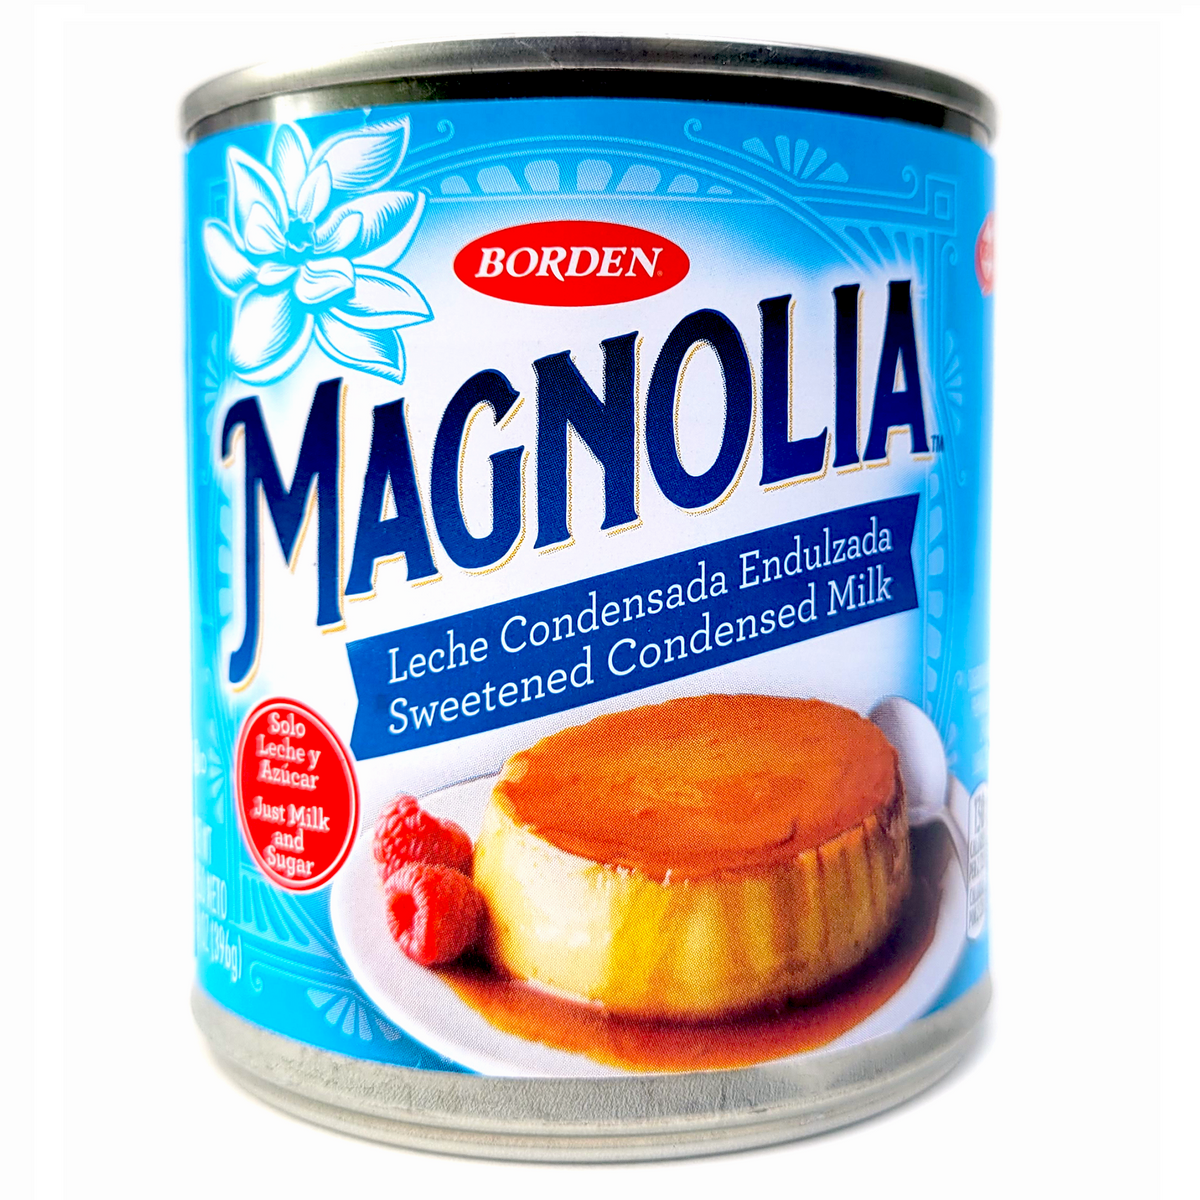 Magnolia Sweetened Condensed Milk - 14 oz